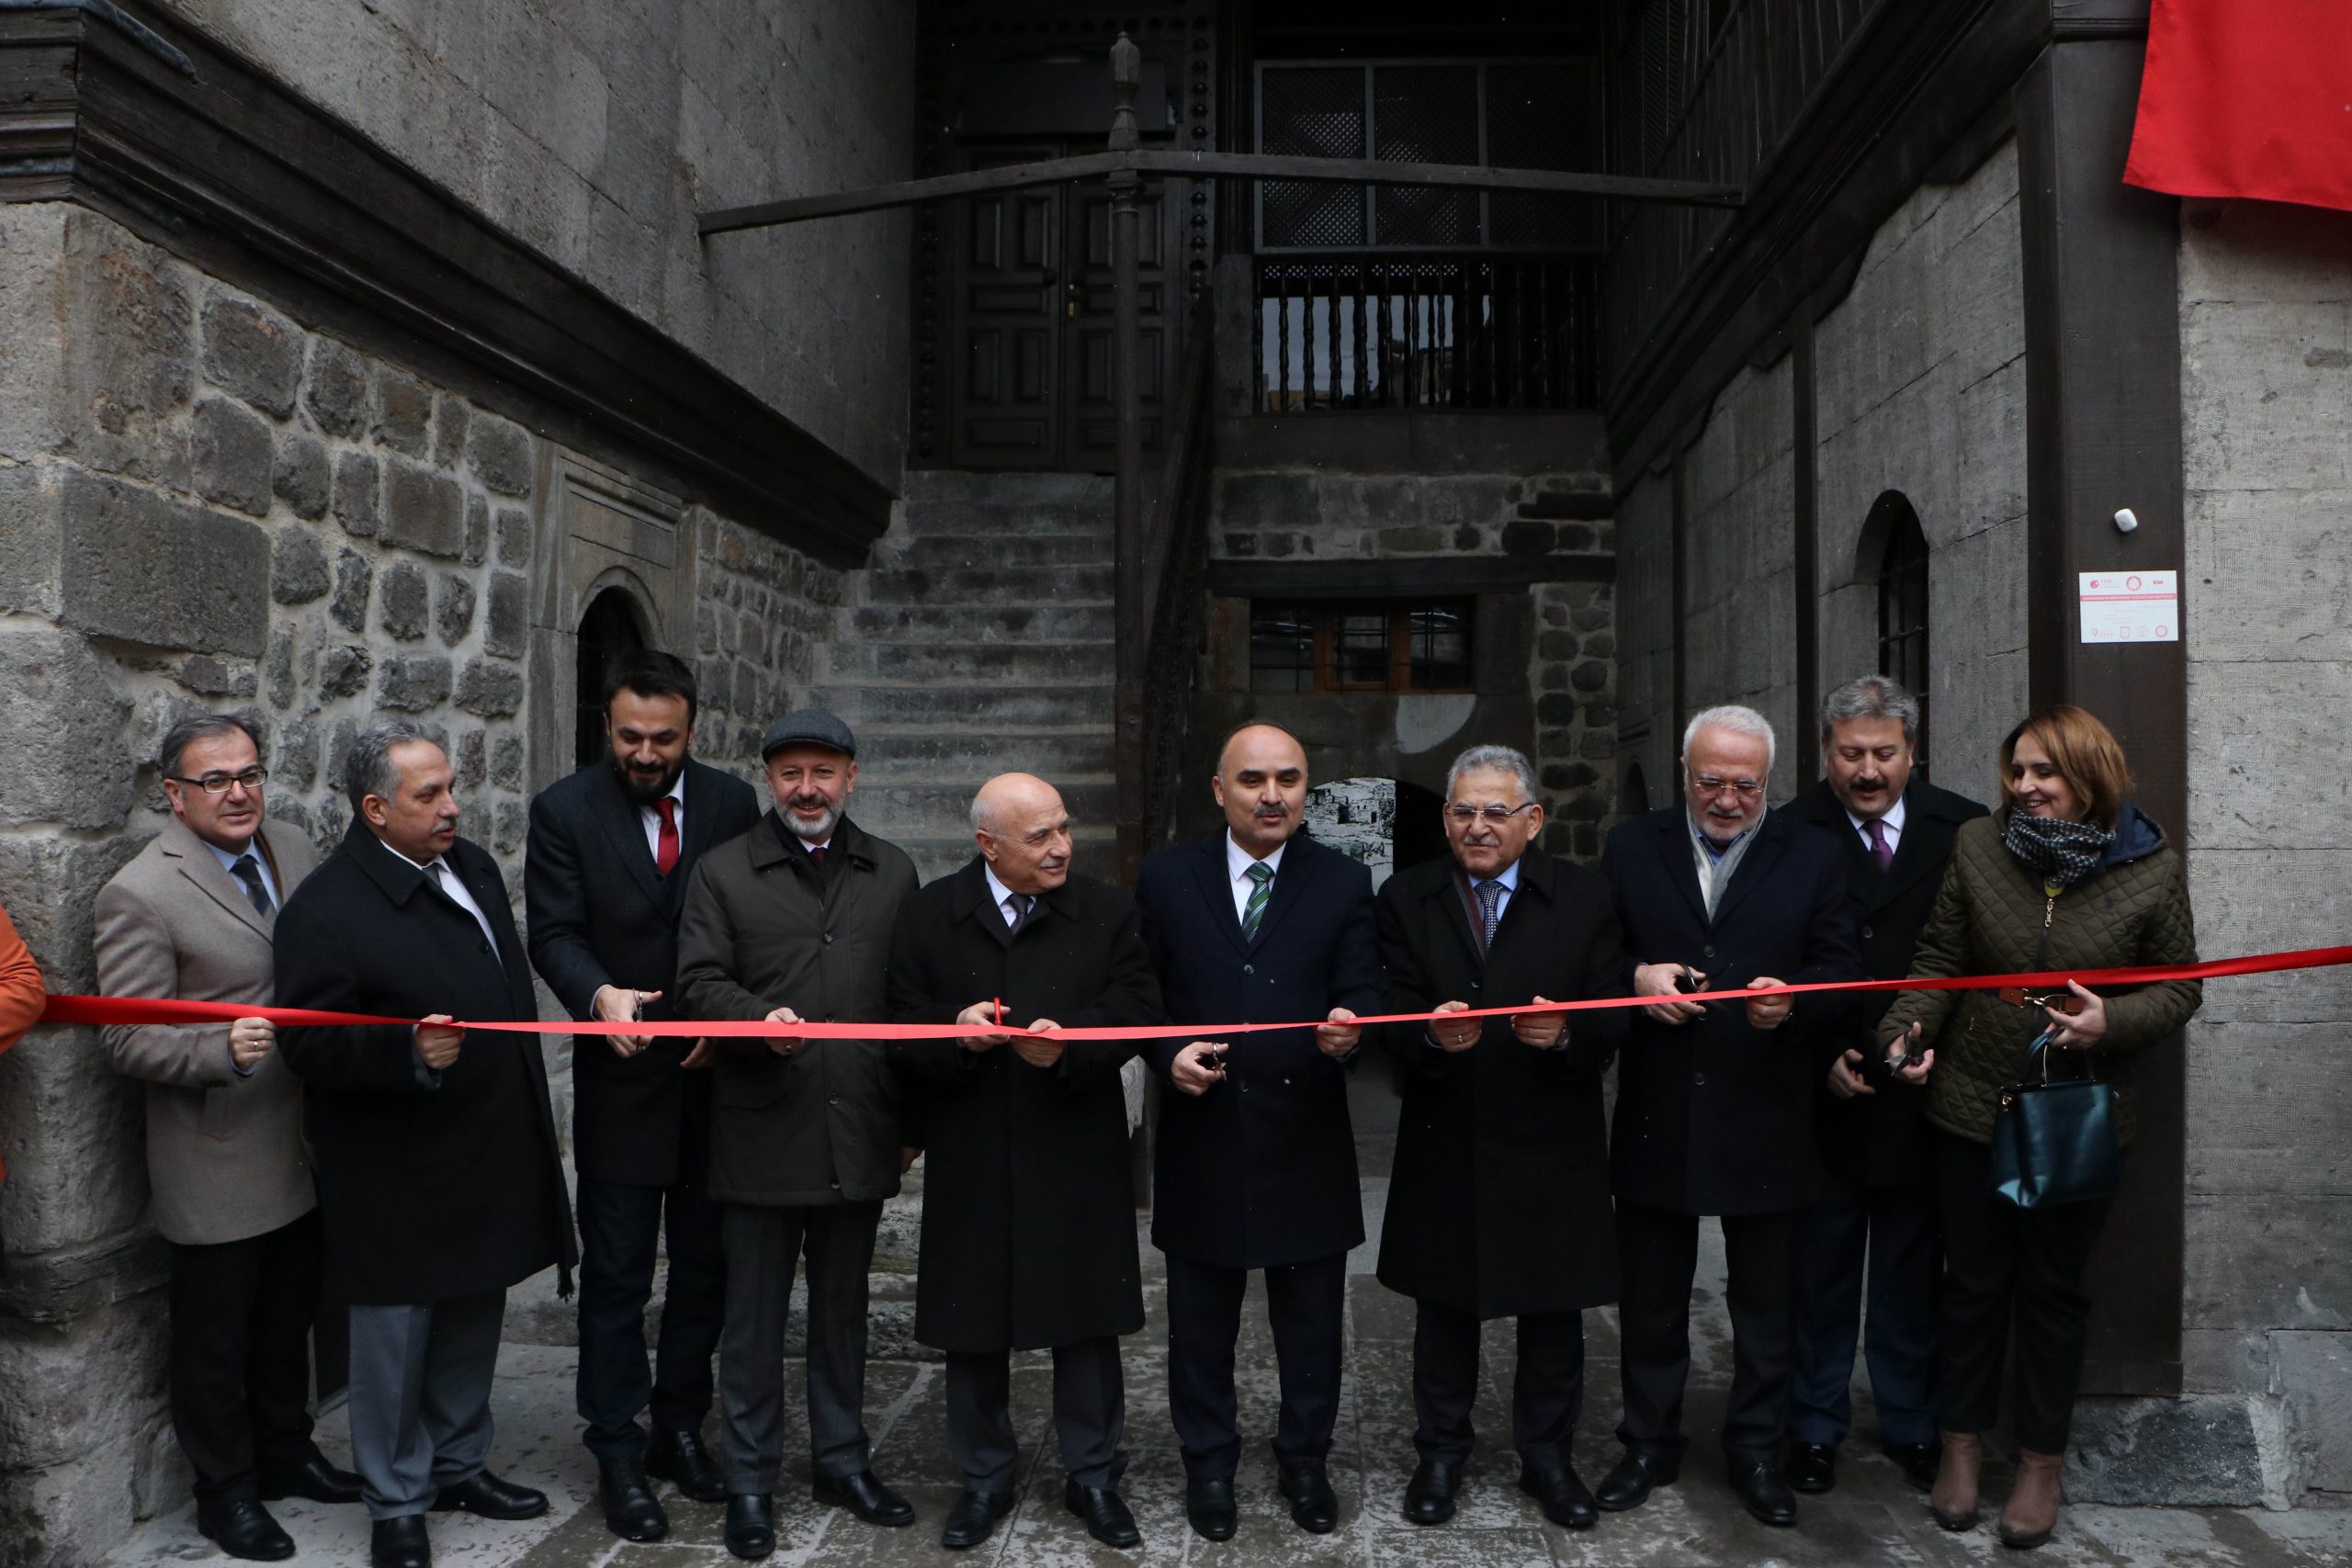 Bu müze buram buram Kayseri kokuyor